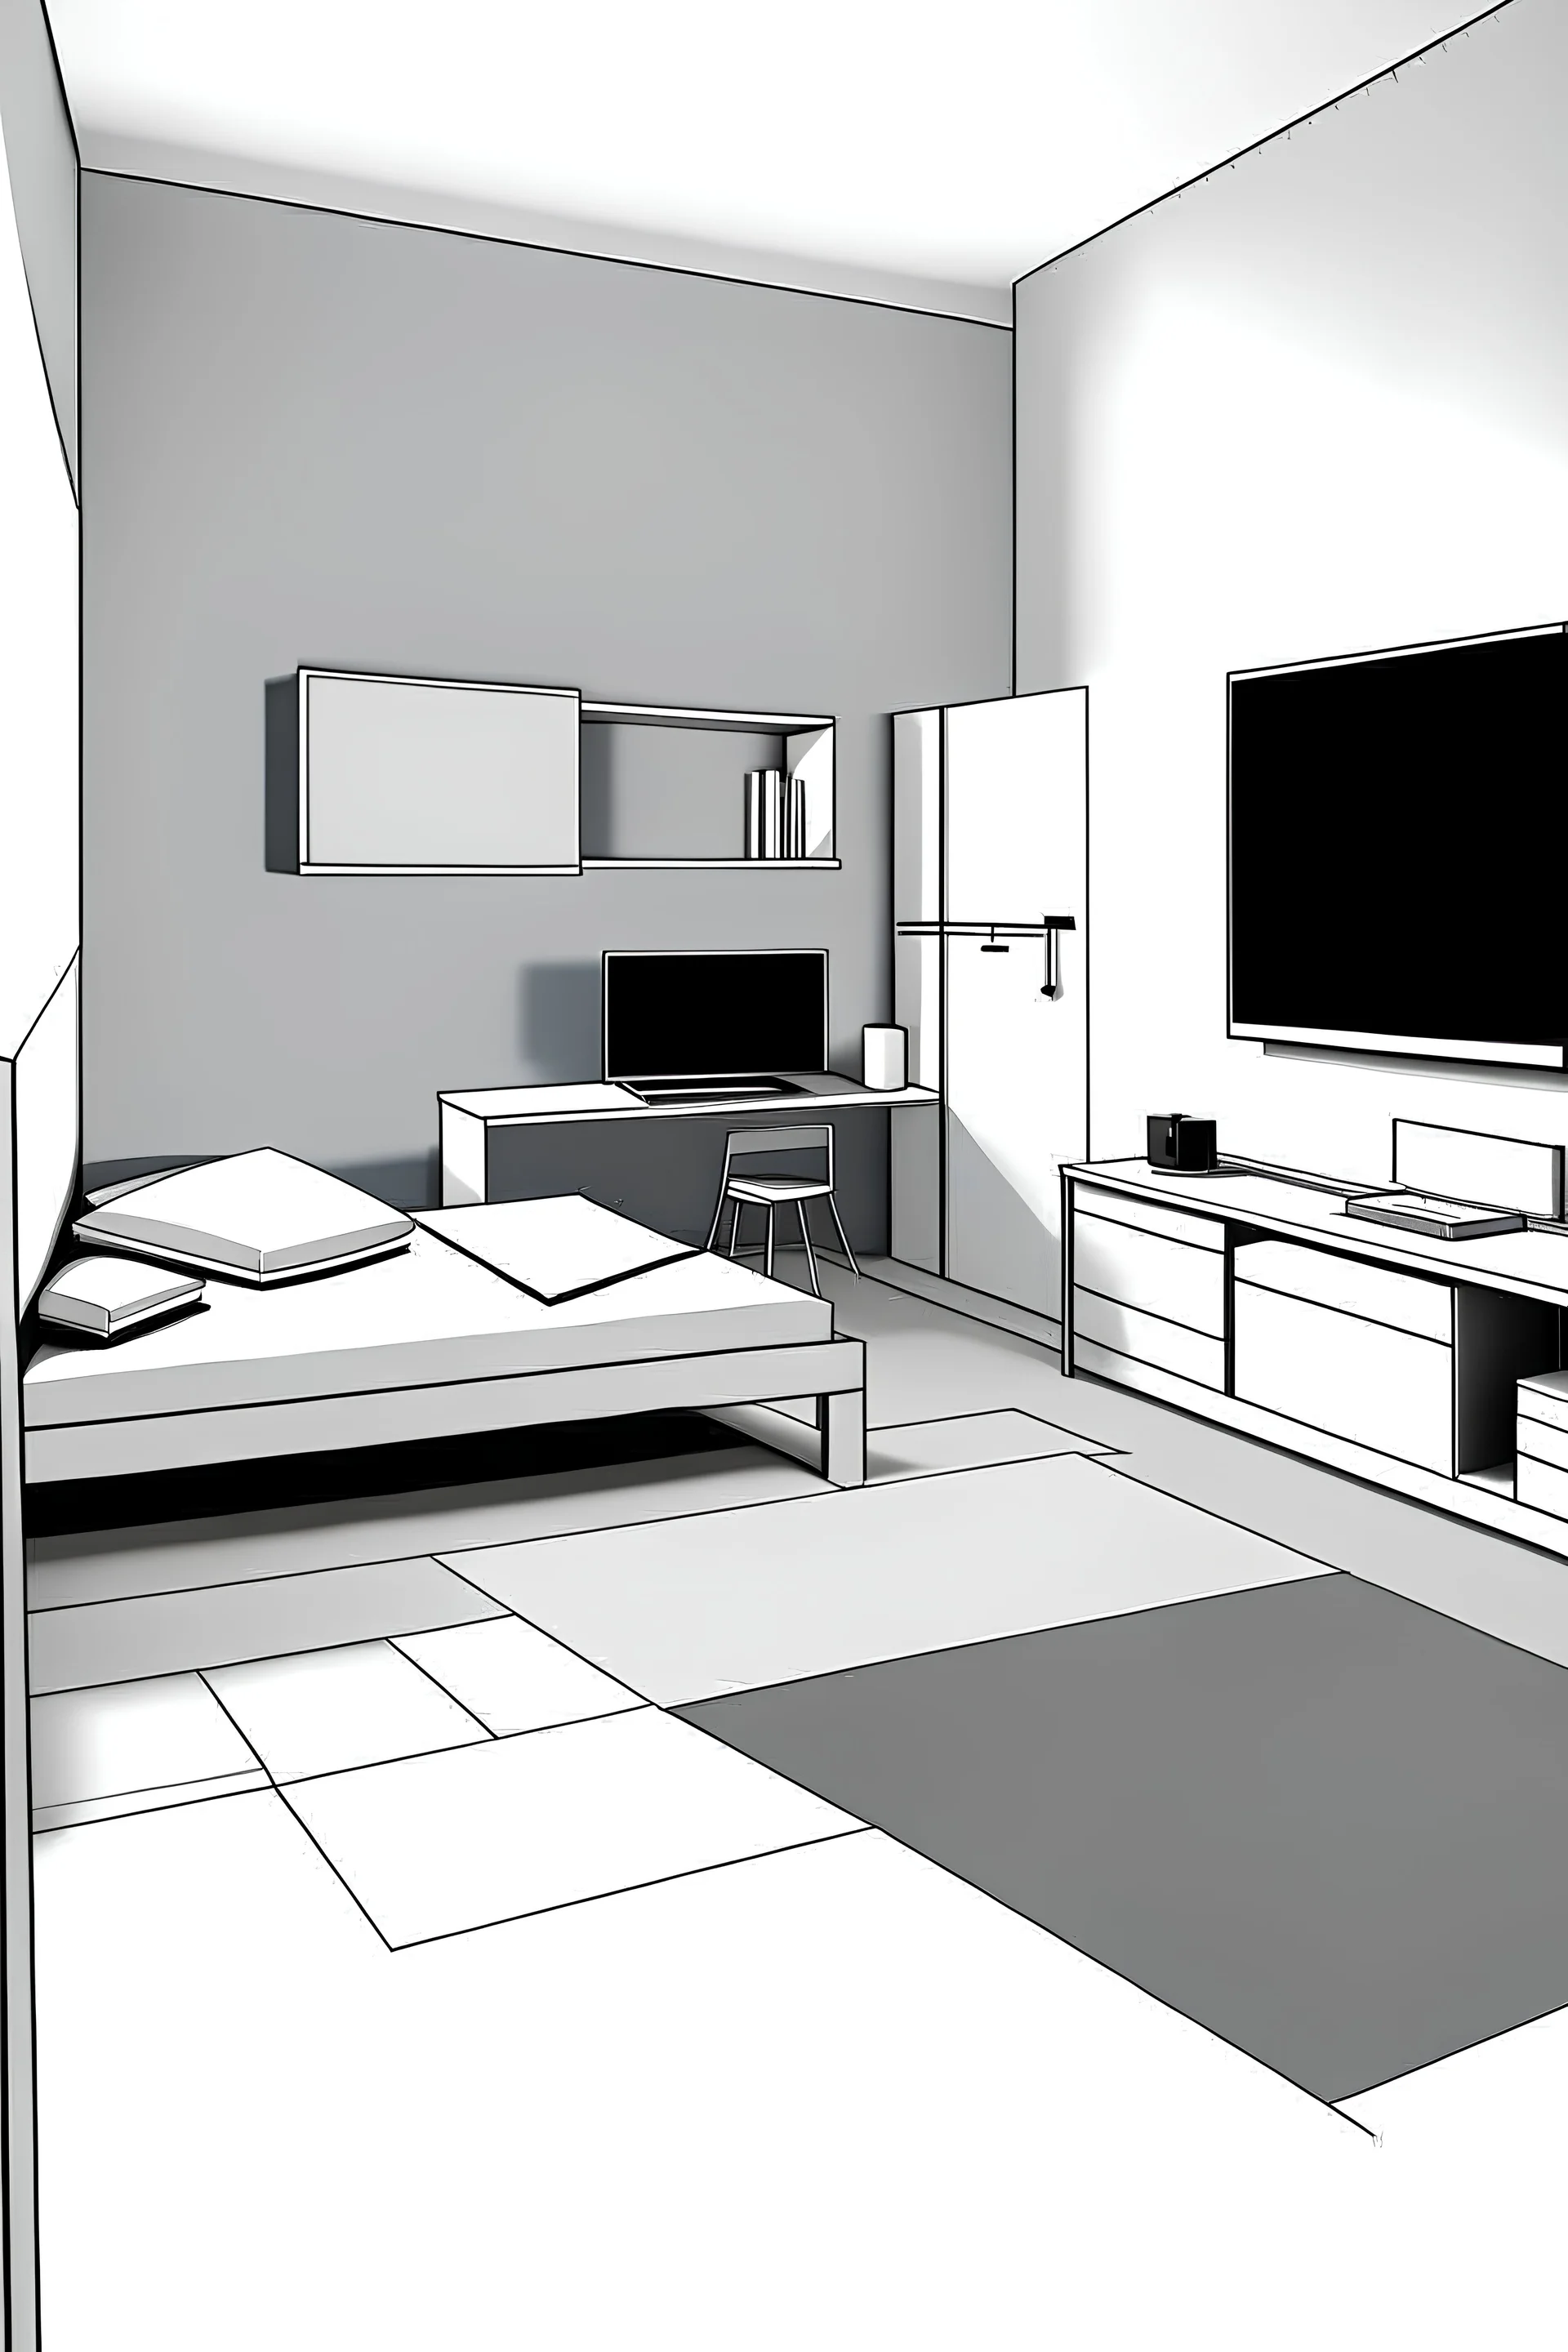 Diseño de una habitación minimalista pero moderna, destinado a un adolescente con esencia y ambientación del gaming